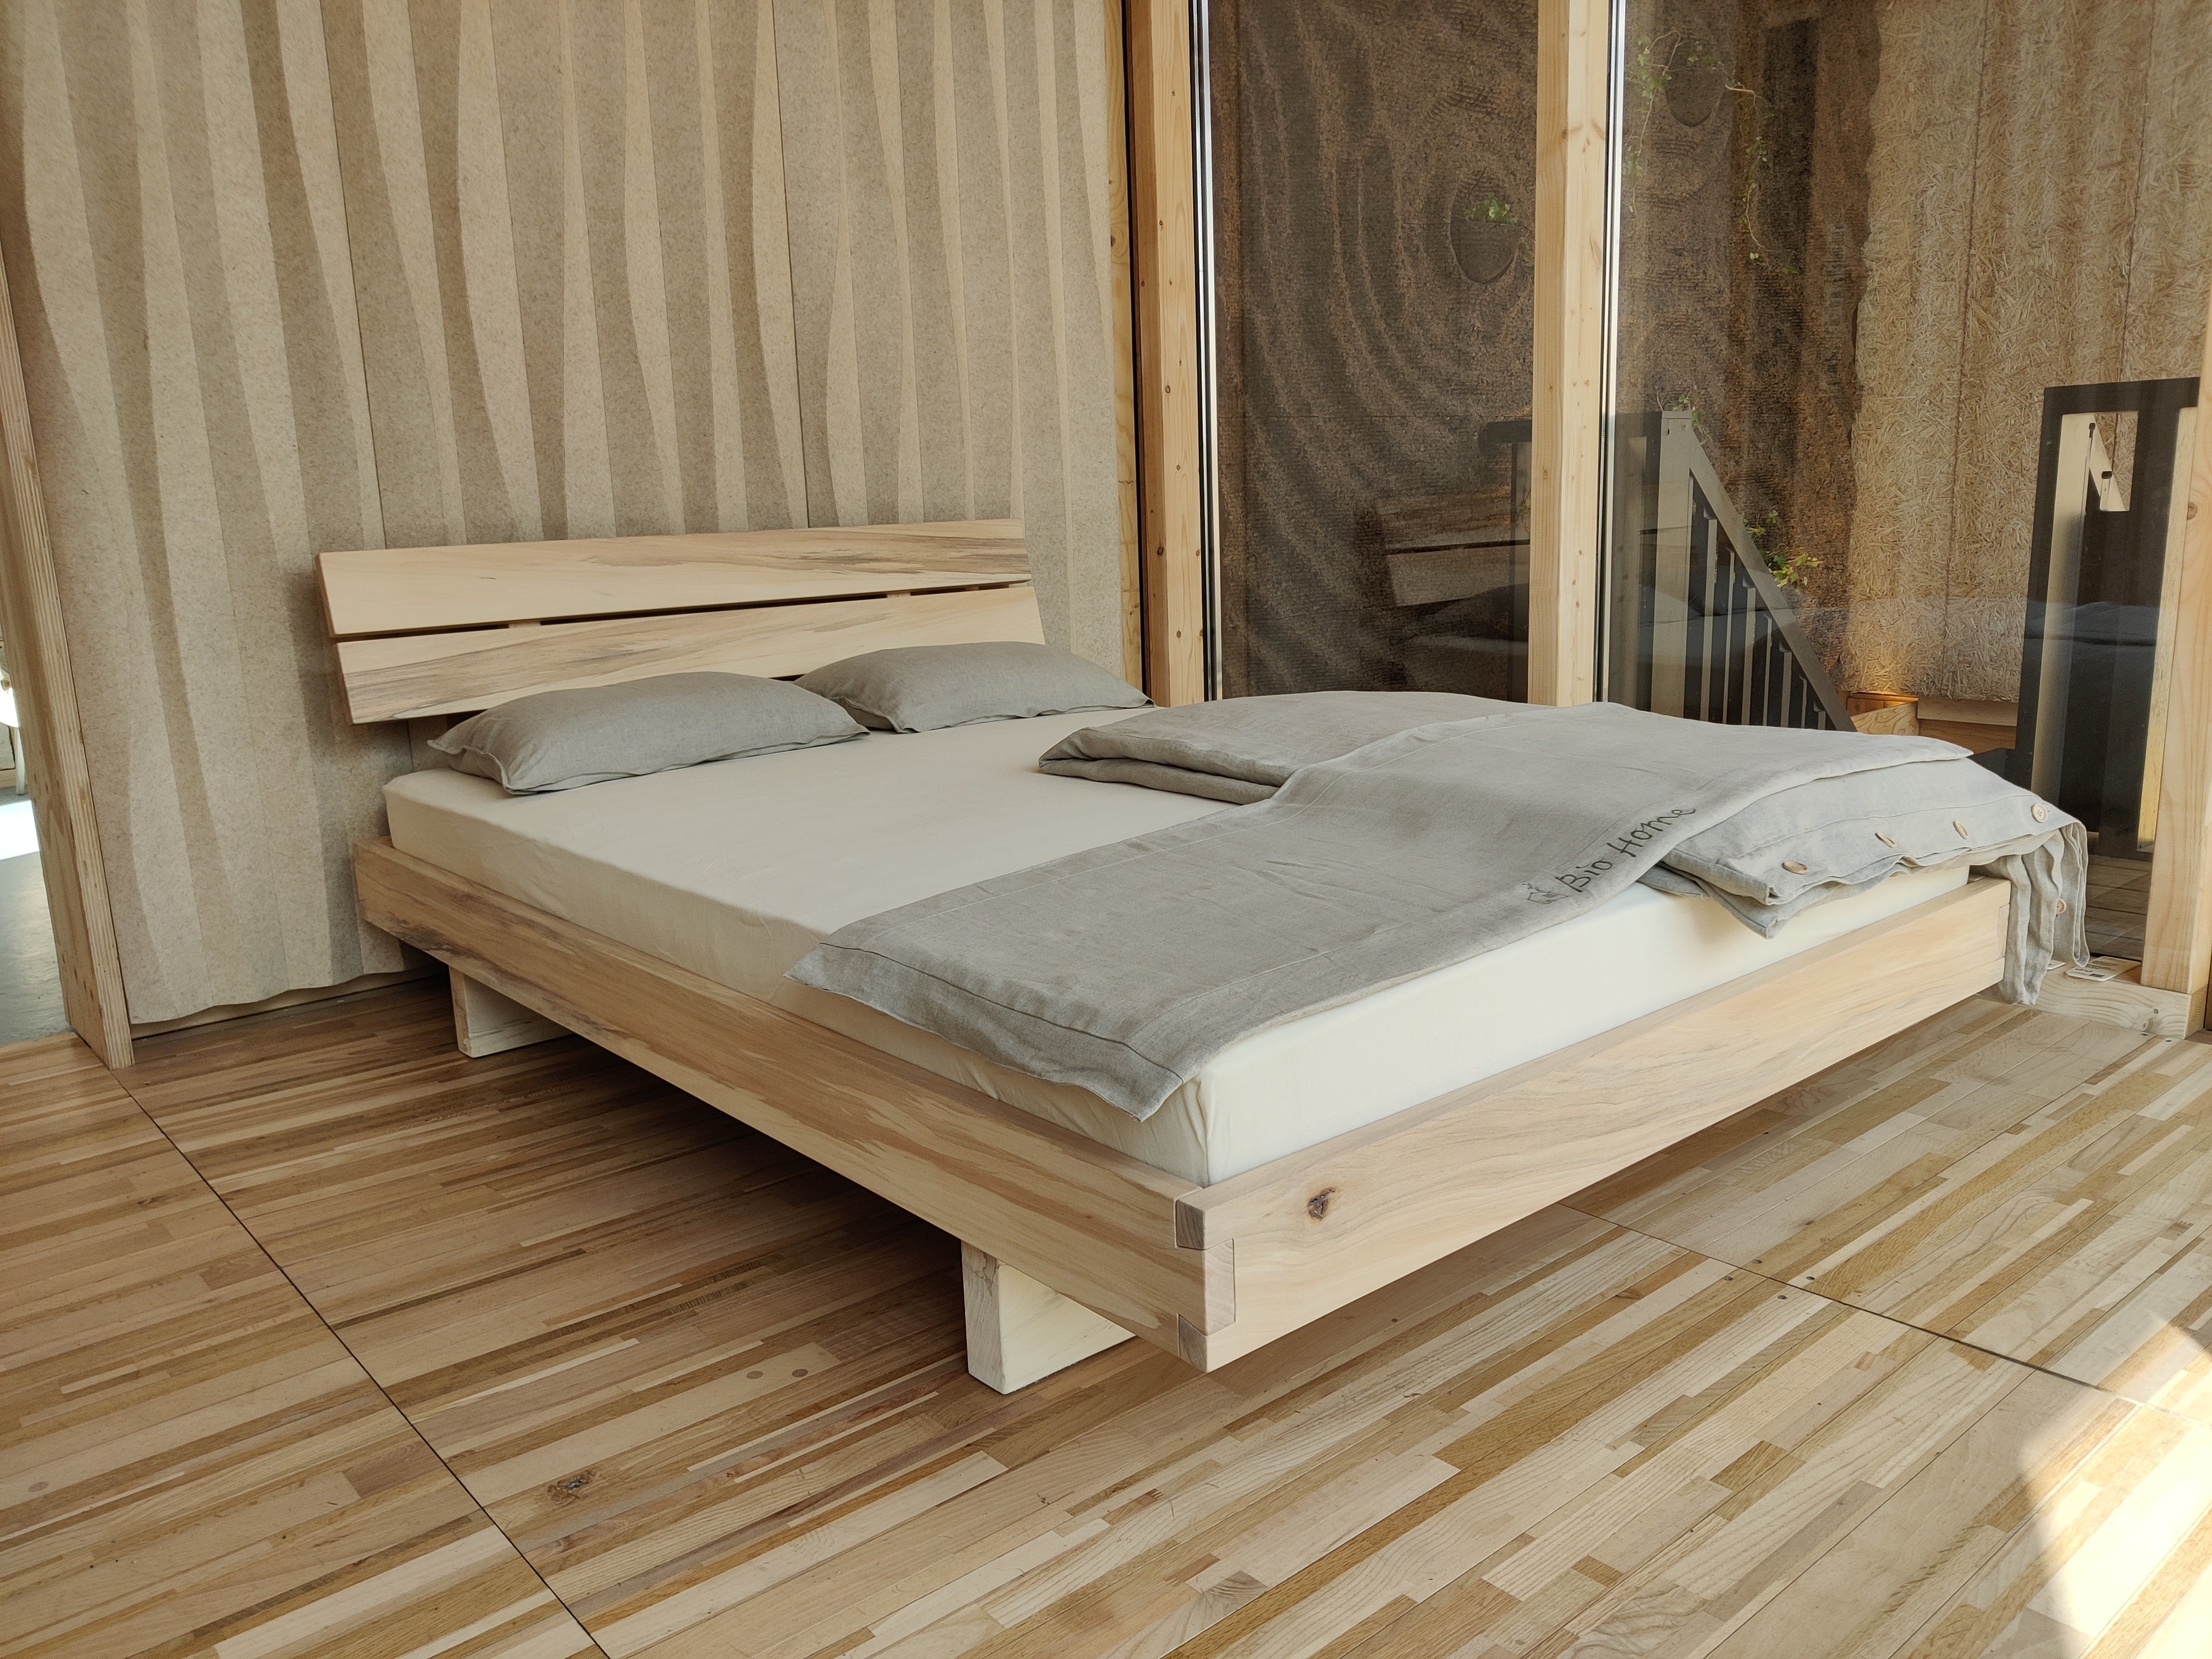 Bed in populier, met lattenbodem, matras, dekbed en bedtextiel - 140x200 cm - toonzaalmodel